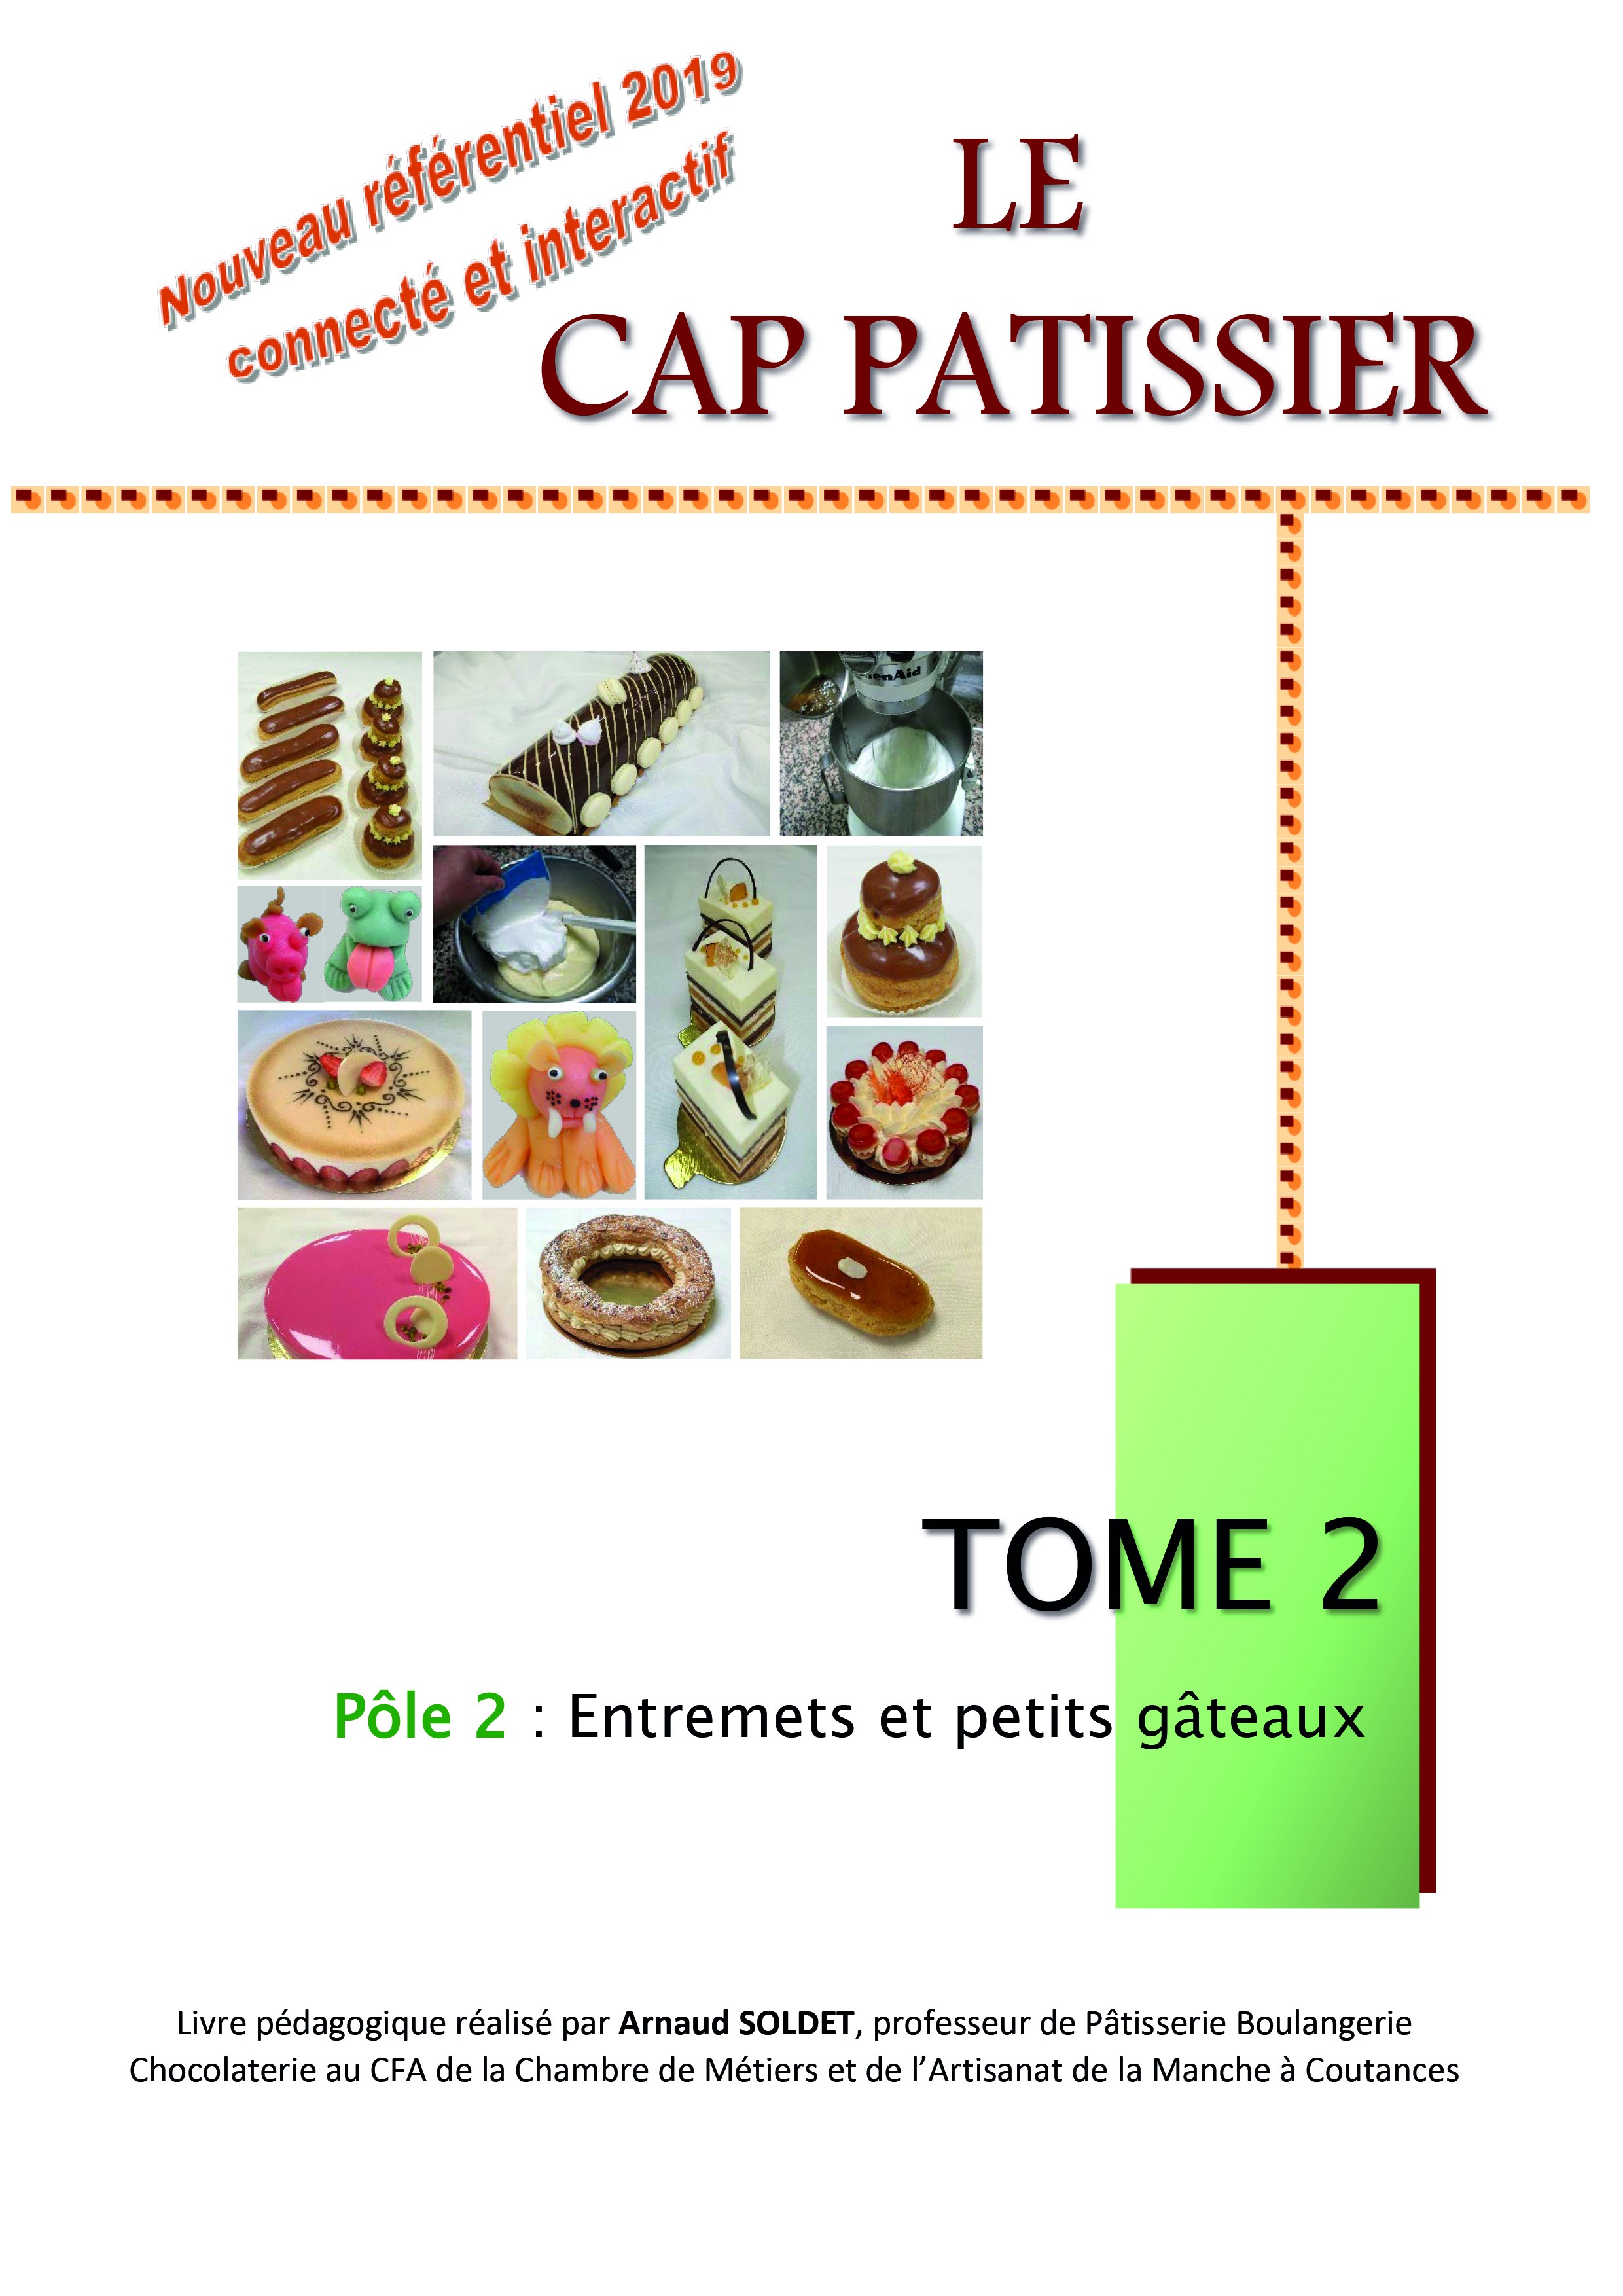 CAP Pâtissier Tome 2 - nouveau référentiel - Interservices Eurocibles